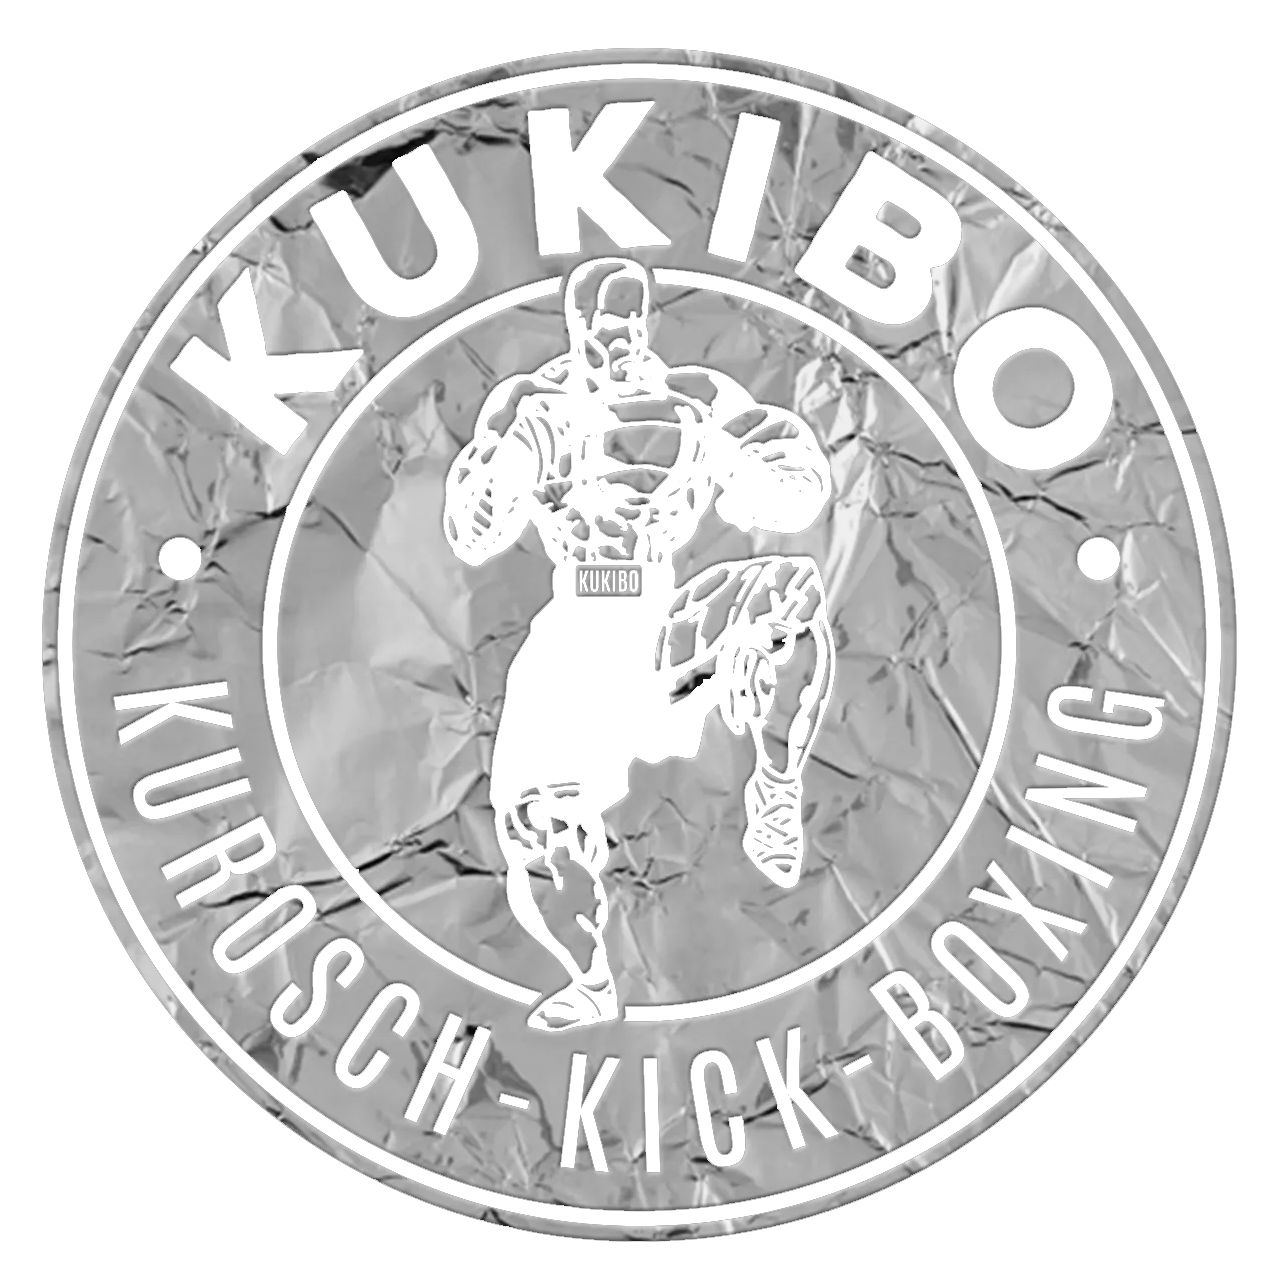 (c) Kickboxen-wetzlar.de